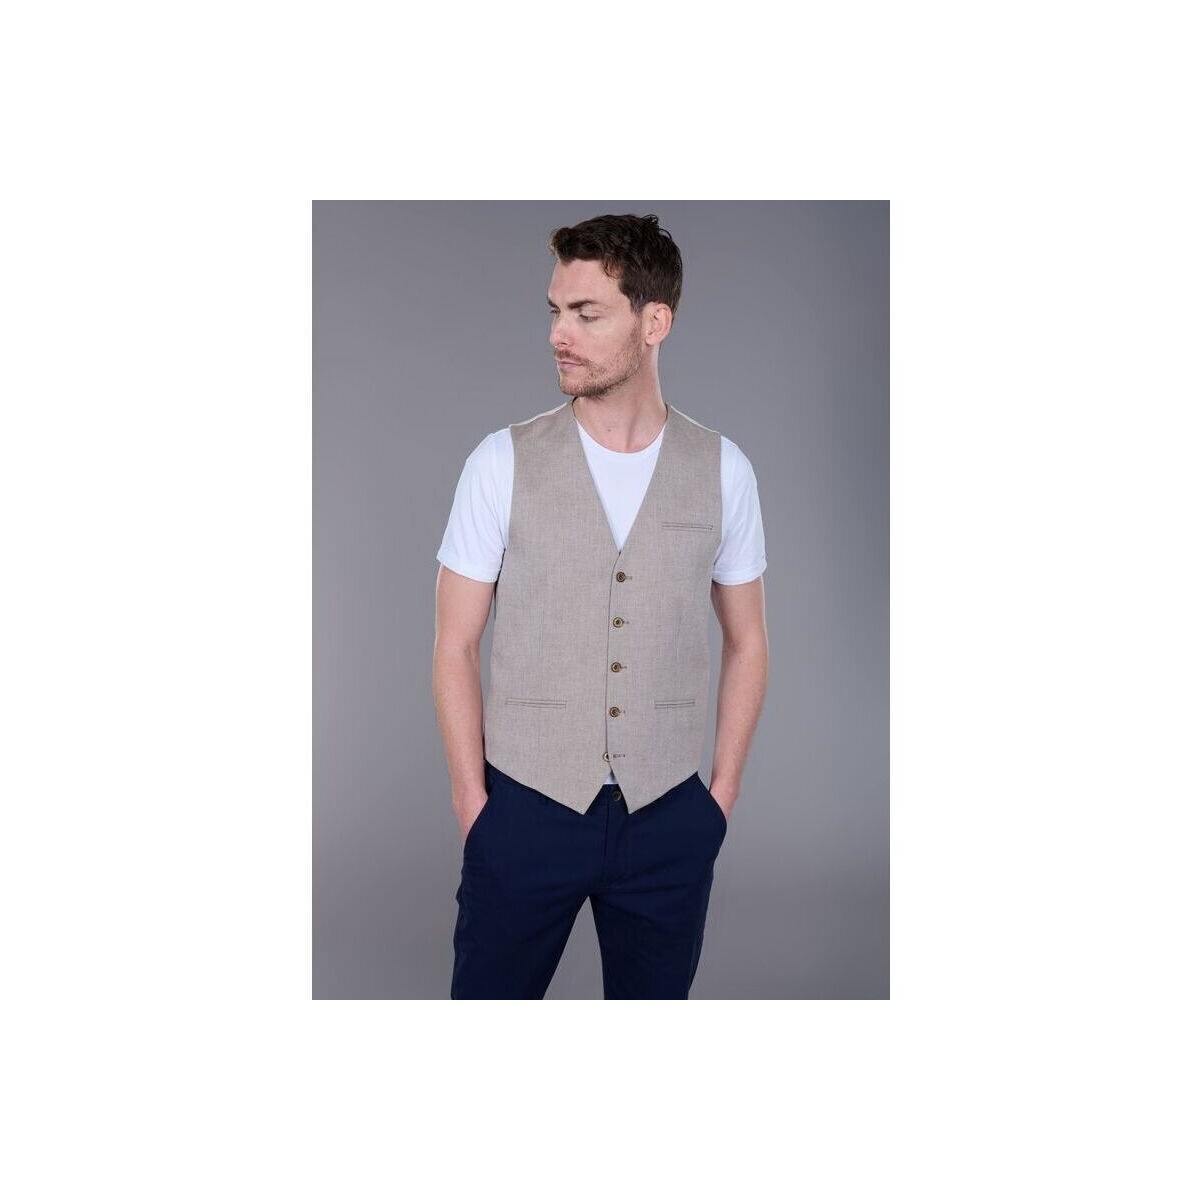 Vêtements Homme Connectez-vous pour ajouter un avis GILET EN COTON-LIN STRETCH À MOTIF MICRO-CHEVRON Beige